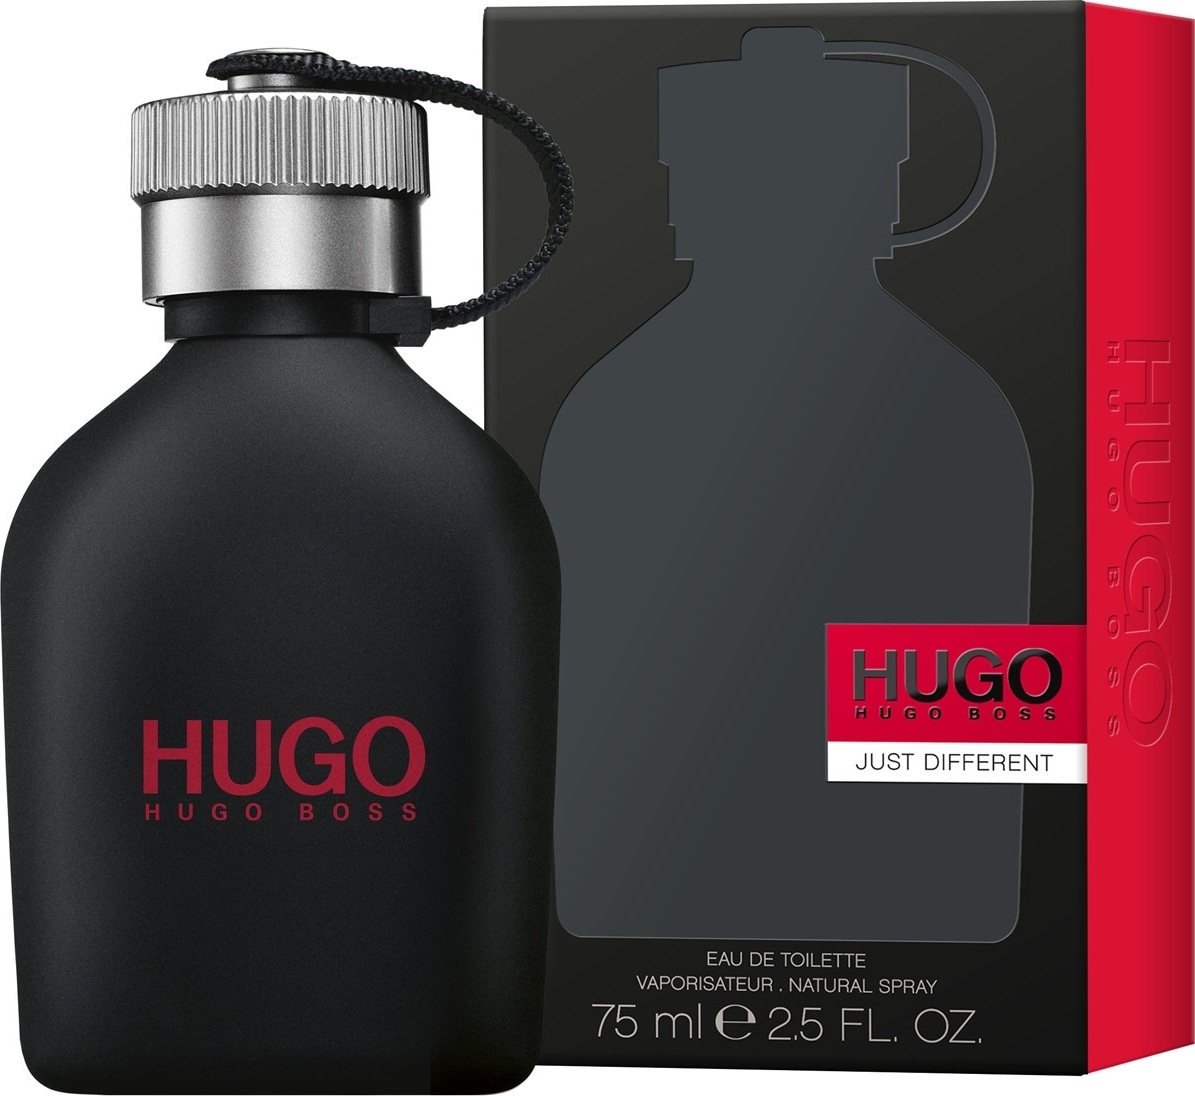 hugo just different eau de toilette 75ml